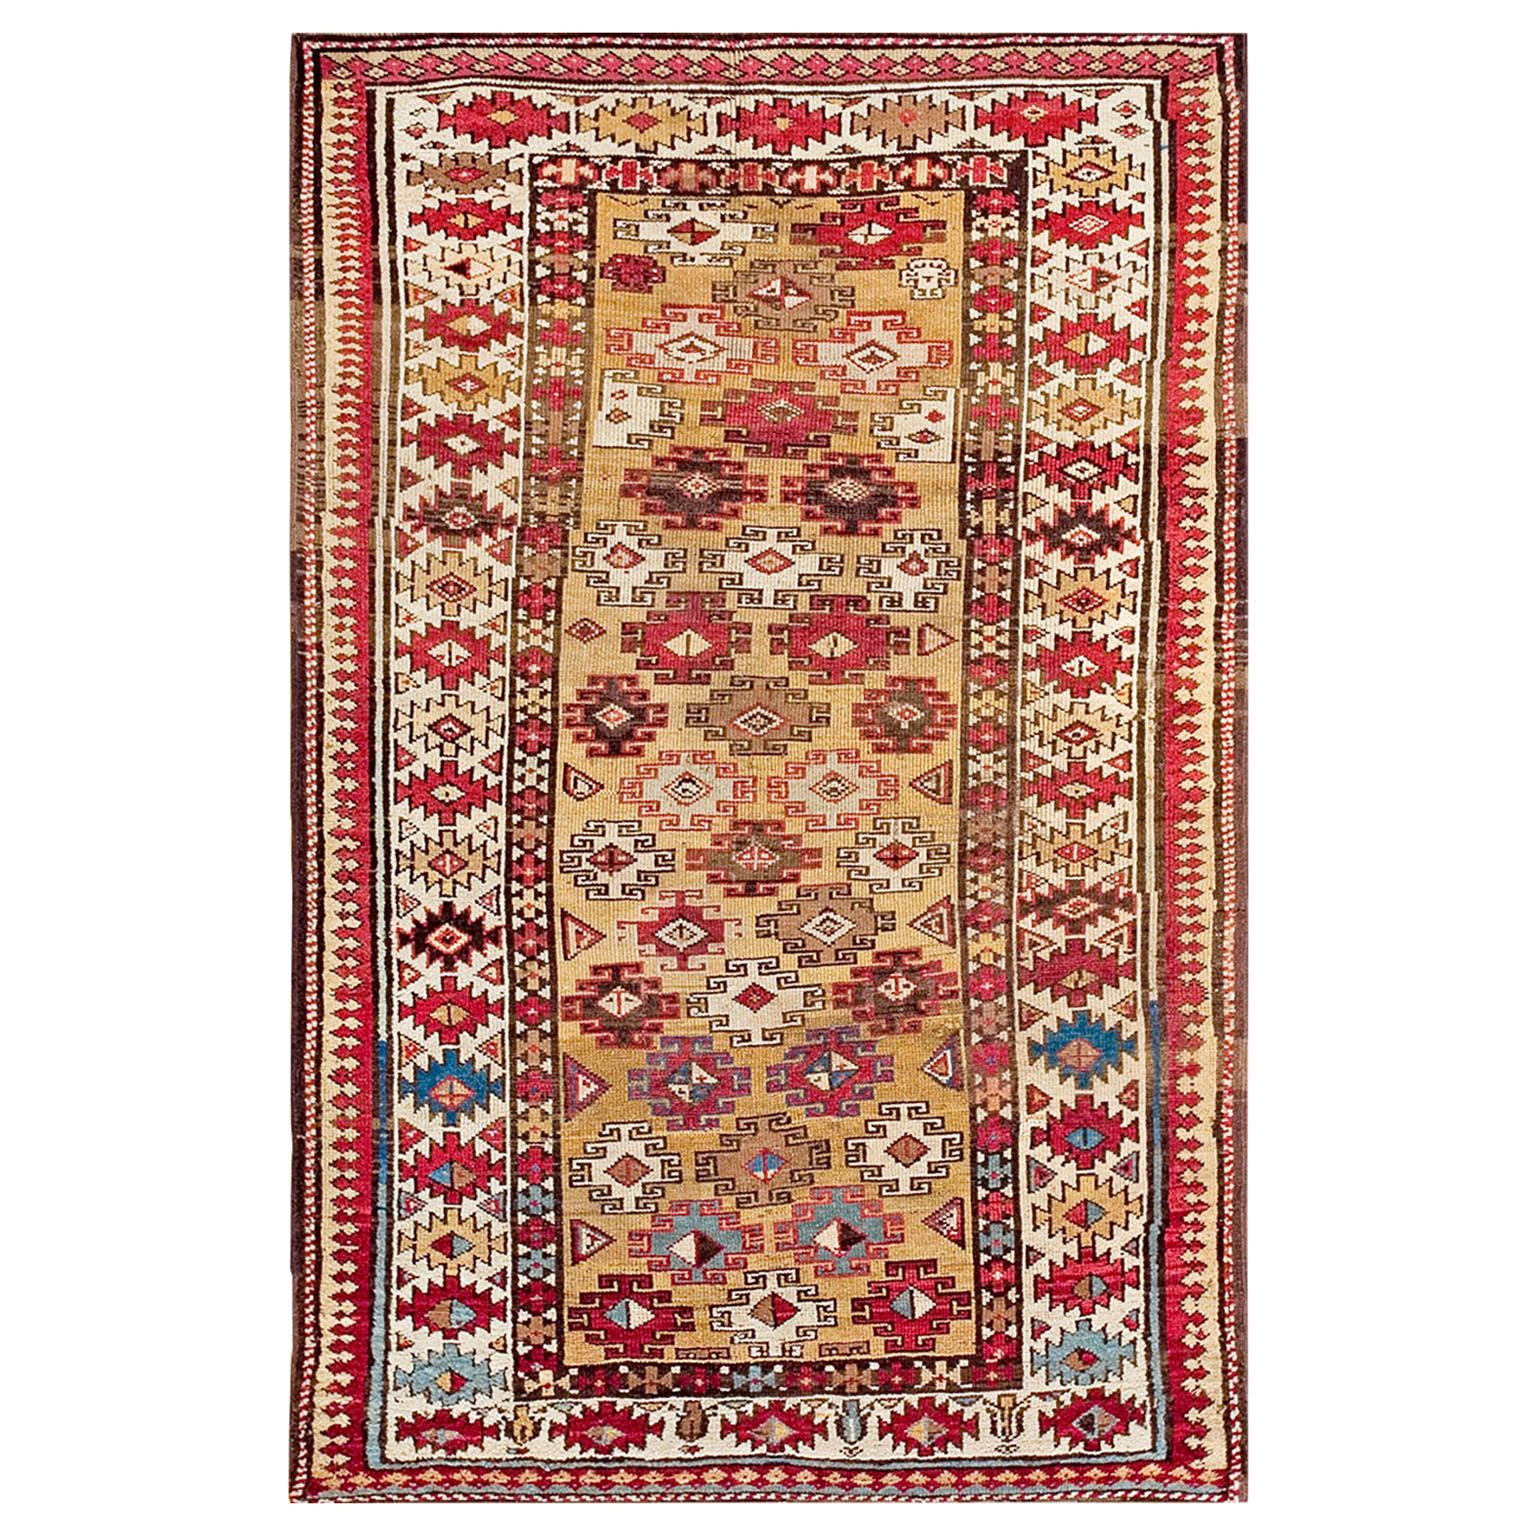 Kaukasischer Moghan-Teppich aus dem frühen 20. Jahrhundert ( 3'6" x 5'7" - 107 x 170)